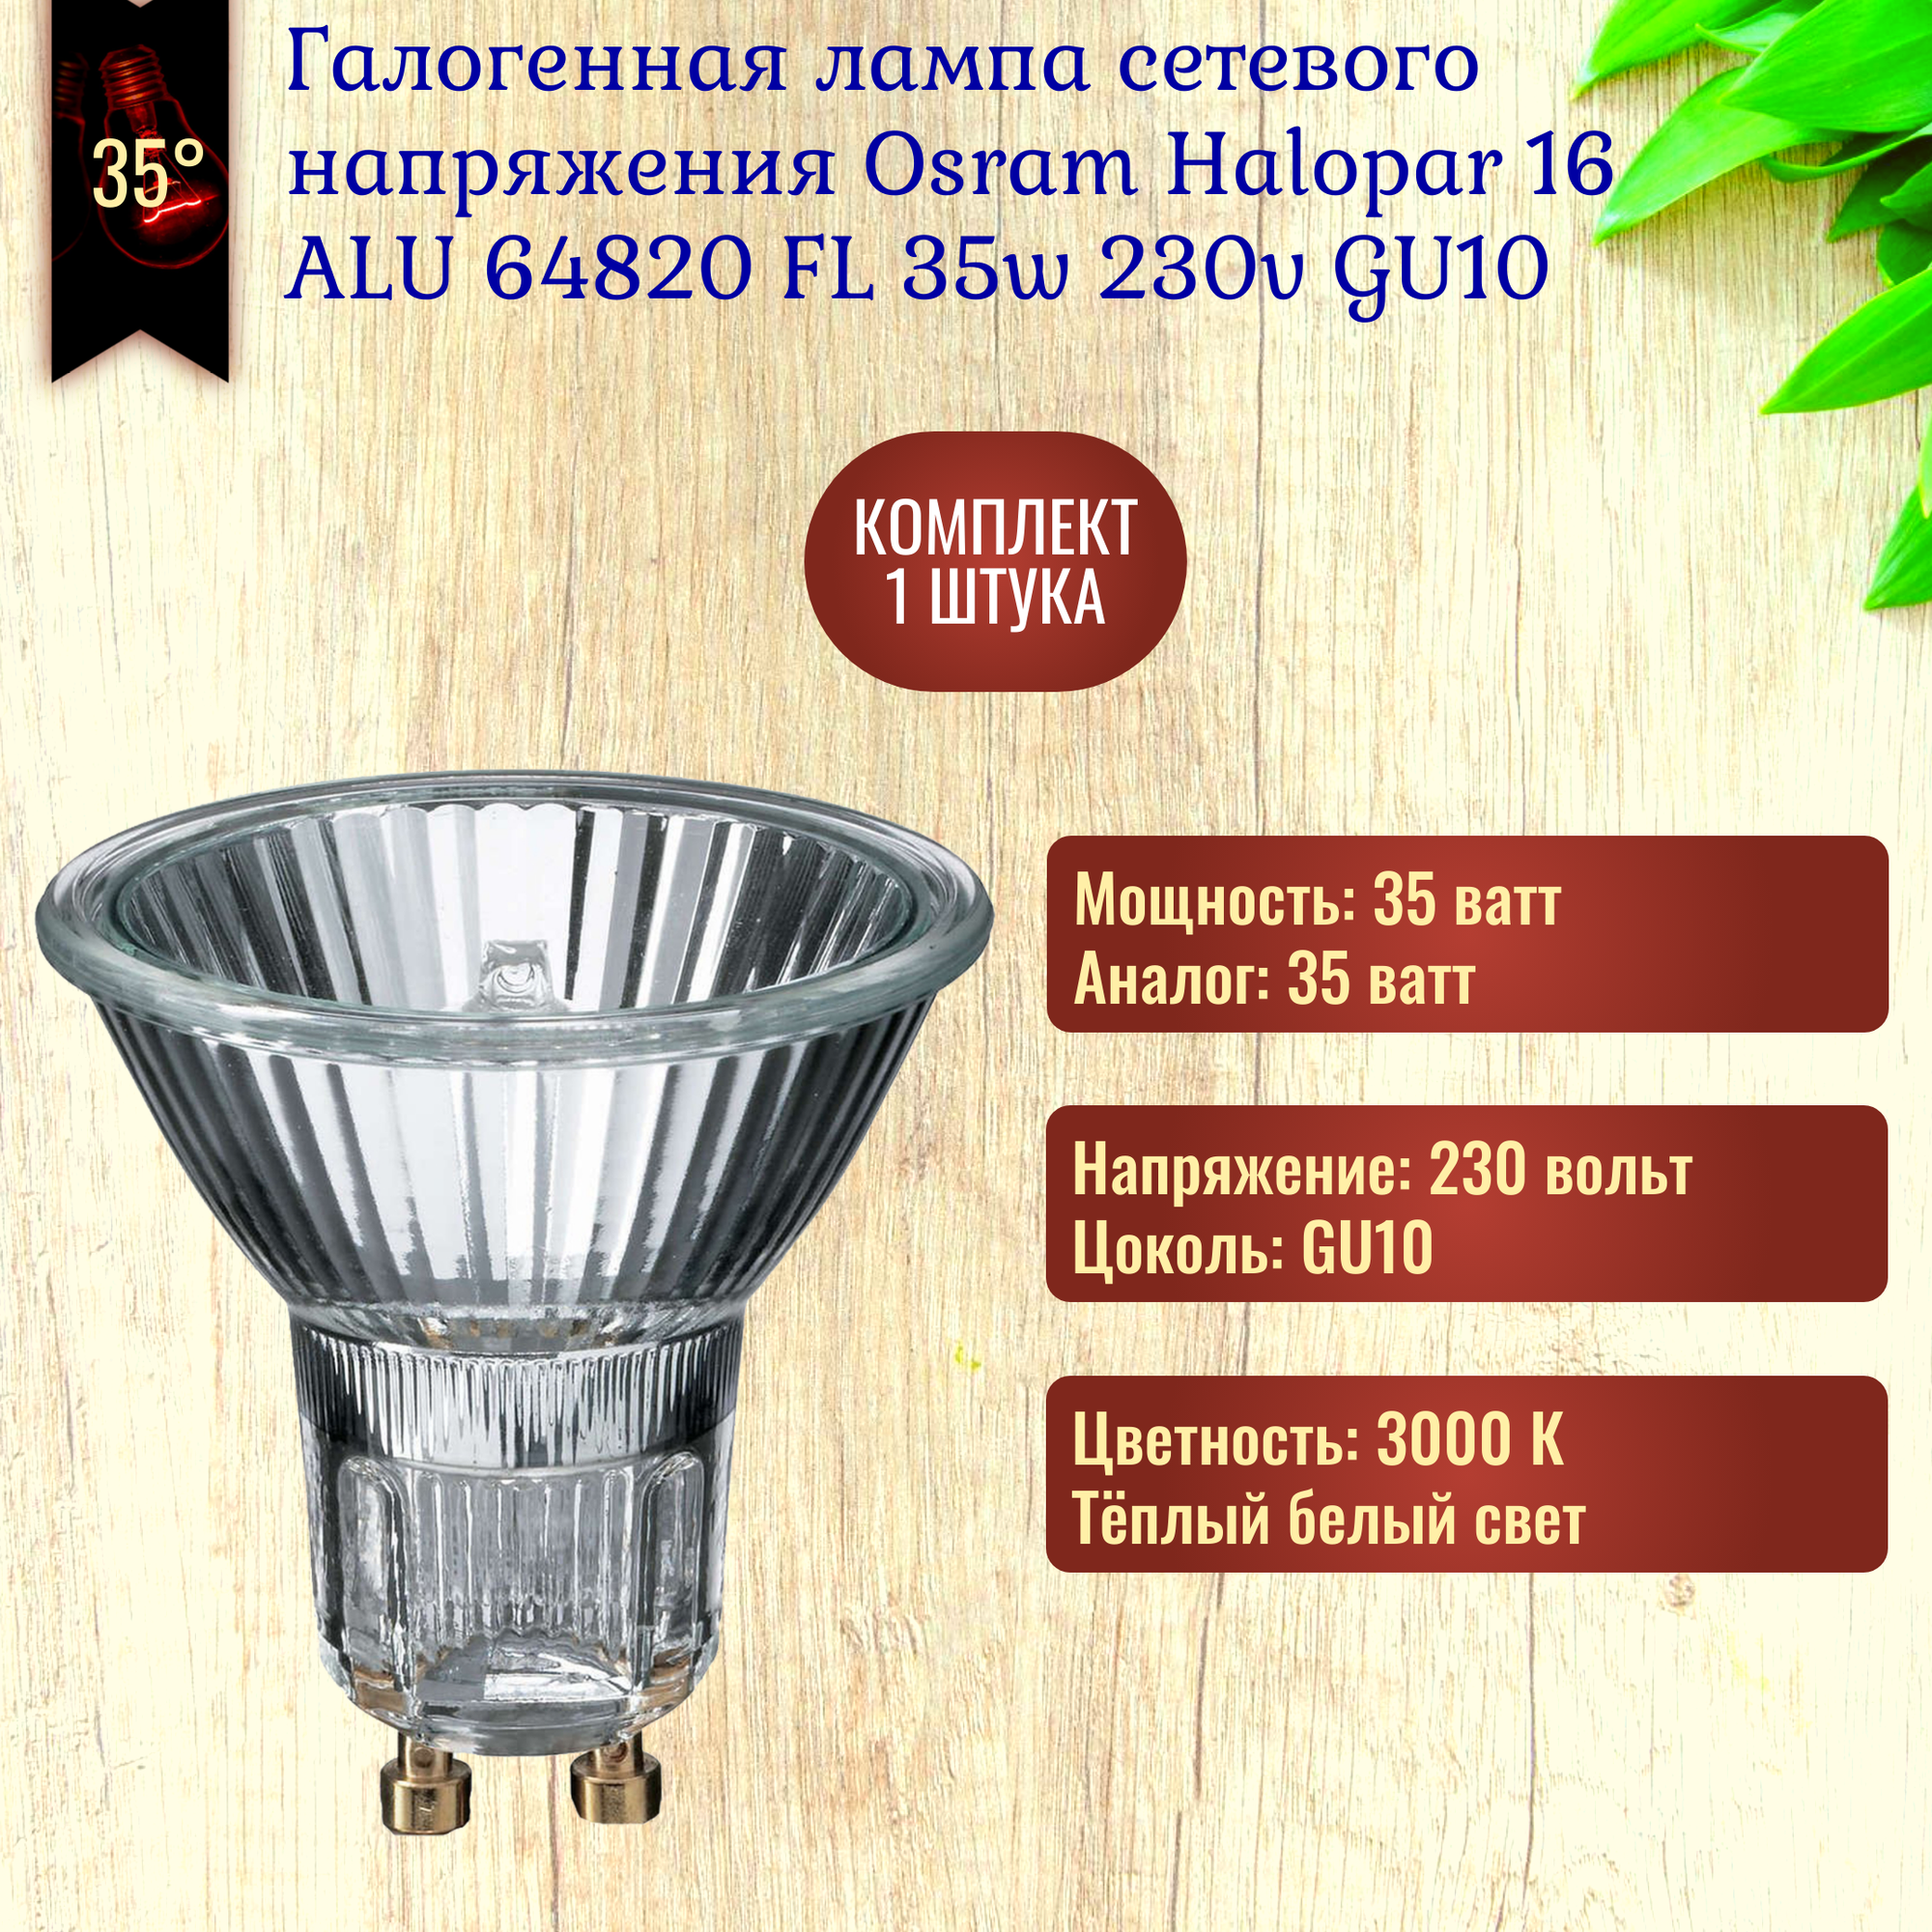 Лампочка Osram Halopar 16 ALU 64820 FL 35w 230v GU10 галогенная, теплый белый свет / 1 штука